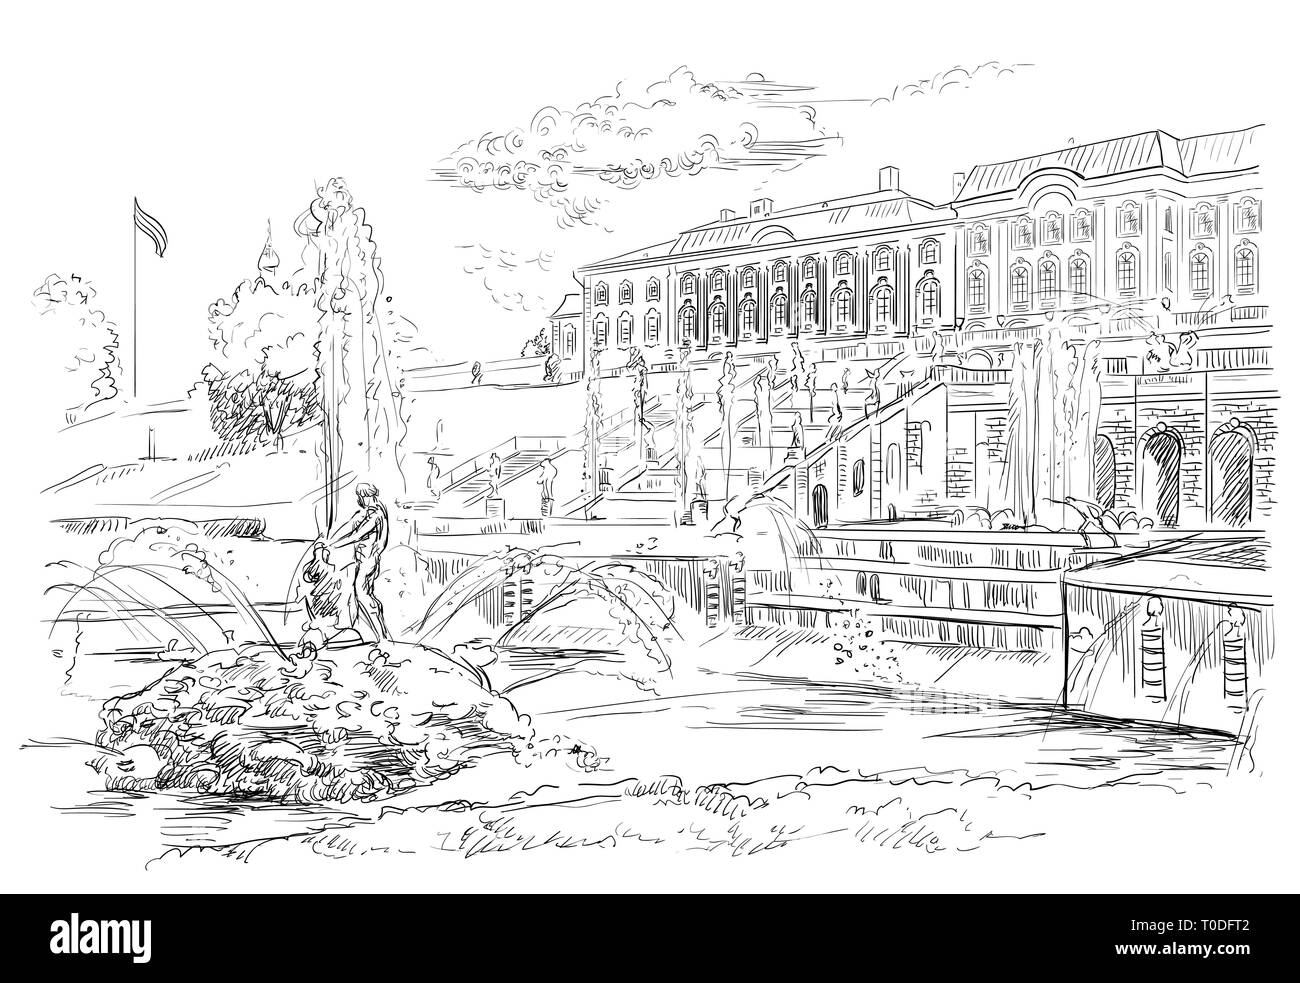 Vista panoramica della grande cascata, sculture e fontane a Peterhof Palace a San Pietroburgo, Russia. Vettore isolato del disegno a mano mi illustrazione Illustrazione Vettoriale